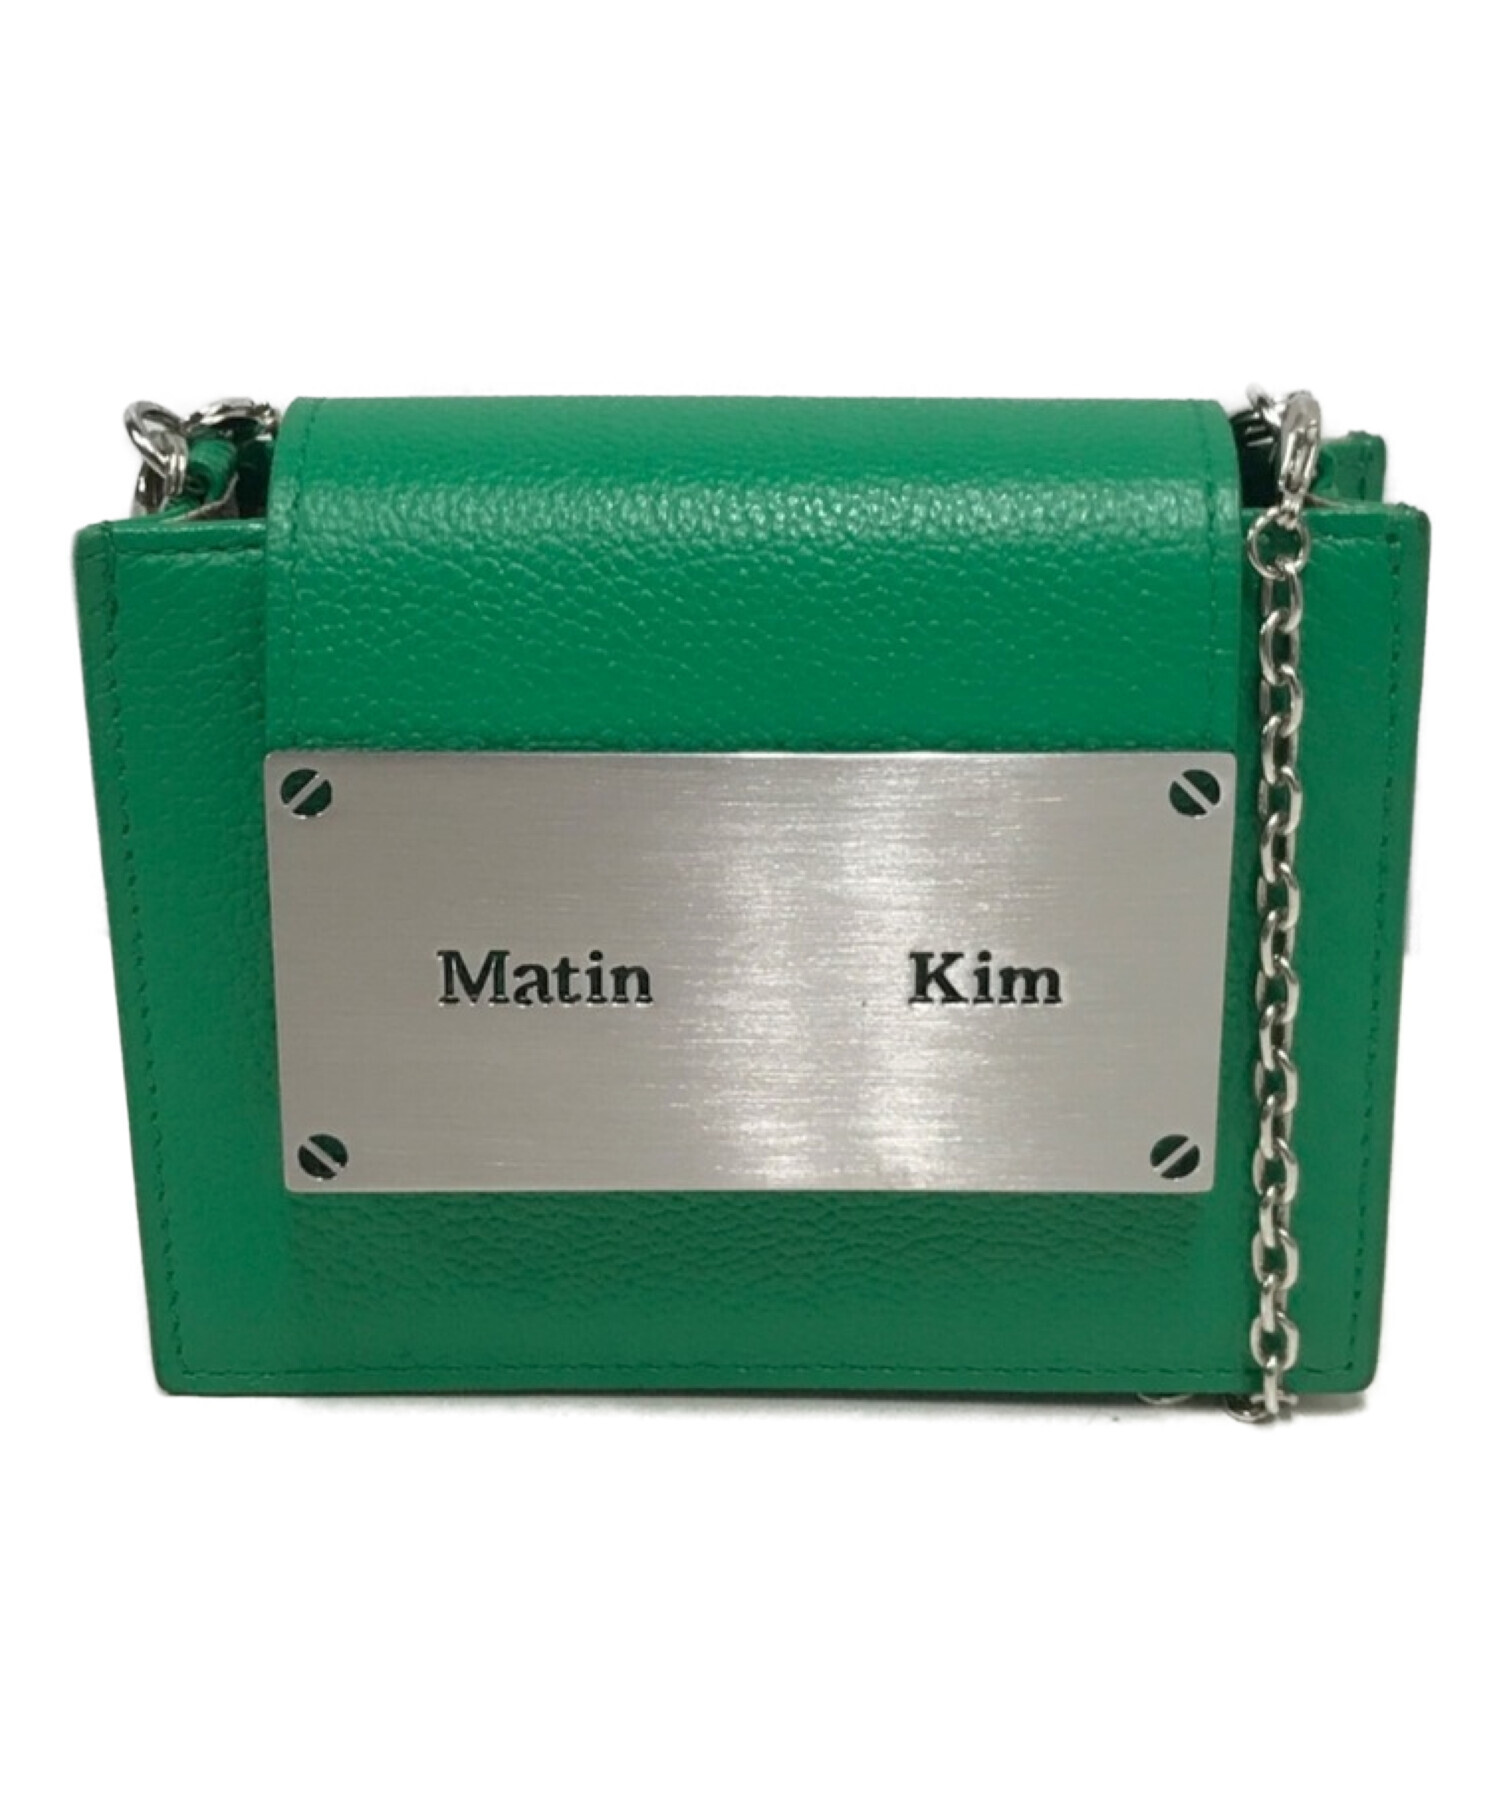 Matin Kim (マーティン・キム) アコーディオンミニチェーンショルダーバッグ グリーン サイズ:表記なし